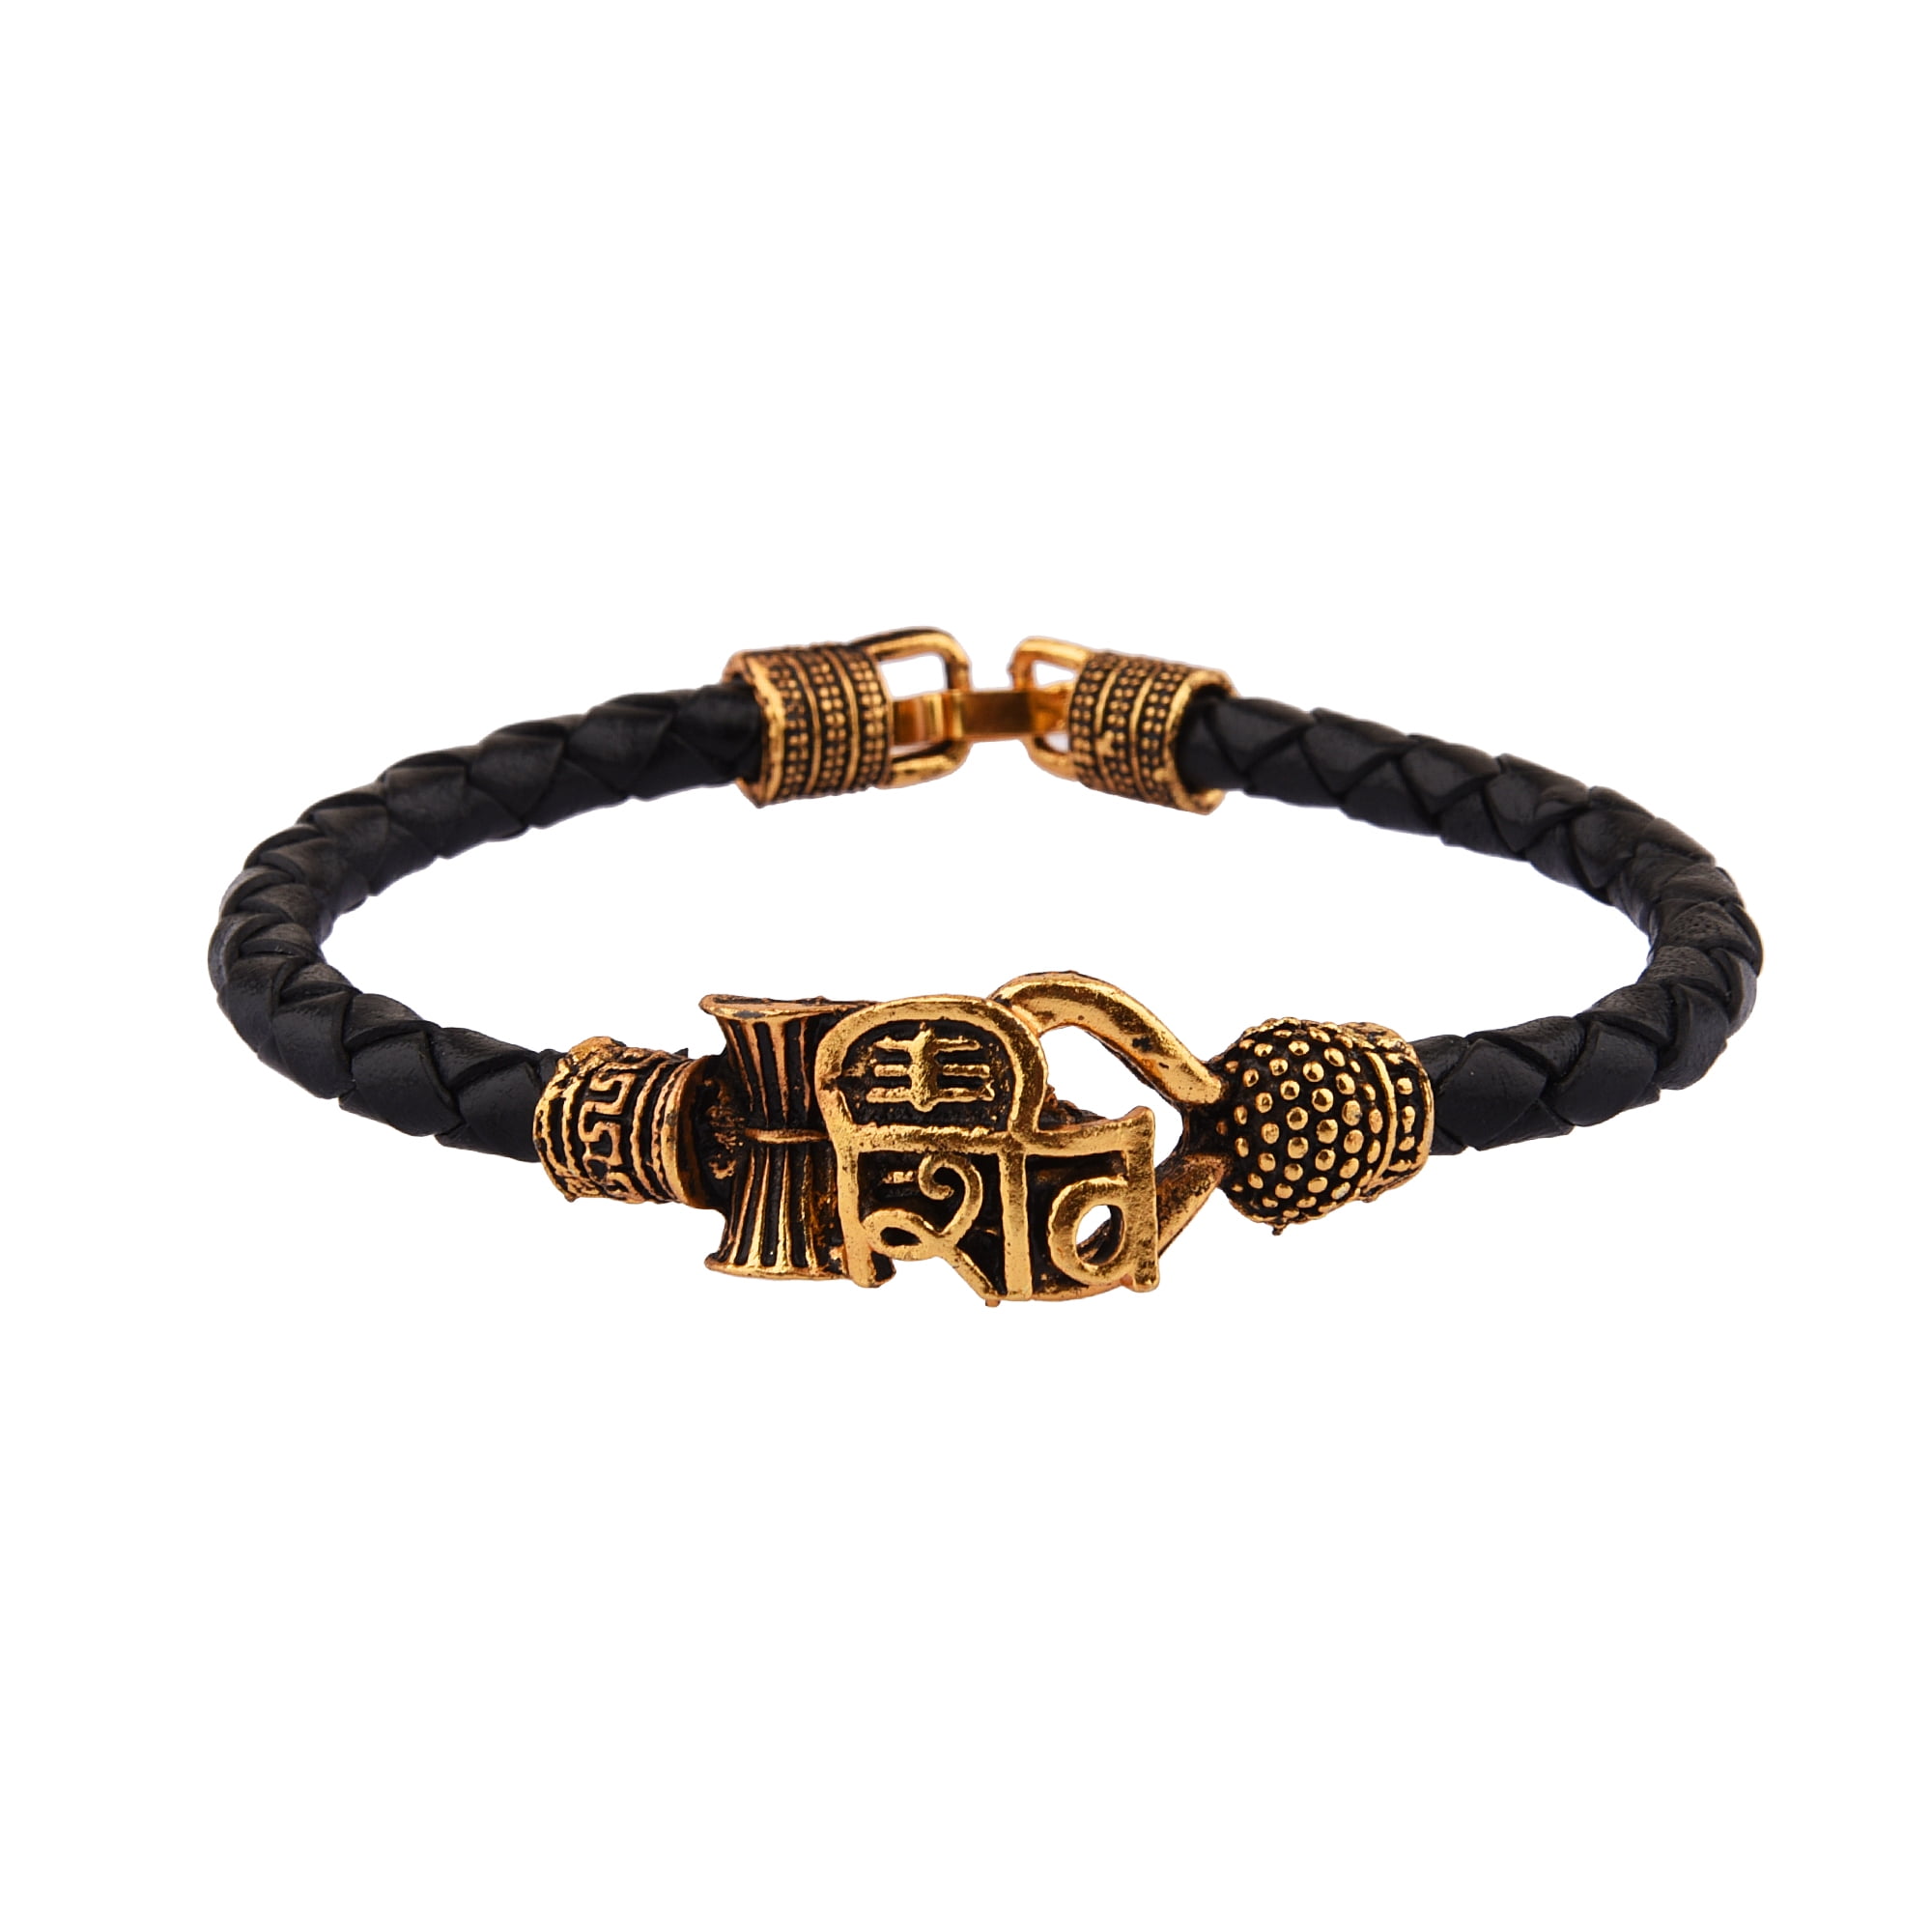 Buy Mautik Sadiwala Golden Shiva Quality Ethnic Karah Bracelet for Men Boys  at Amazon.in